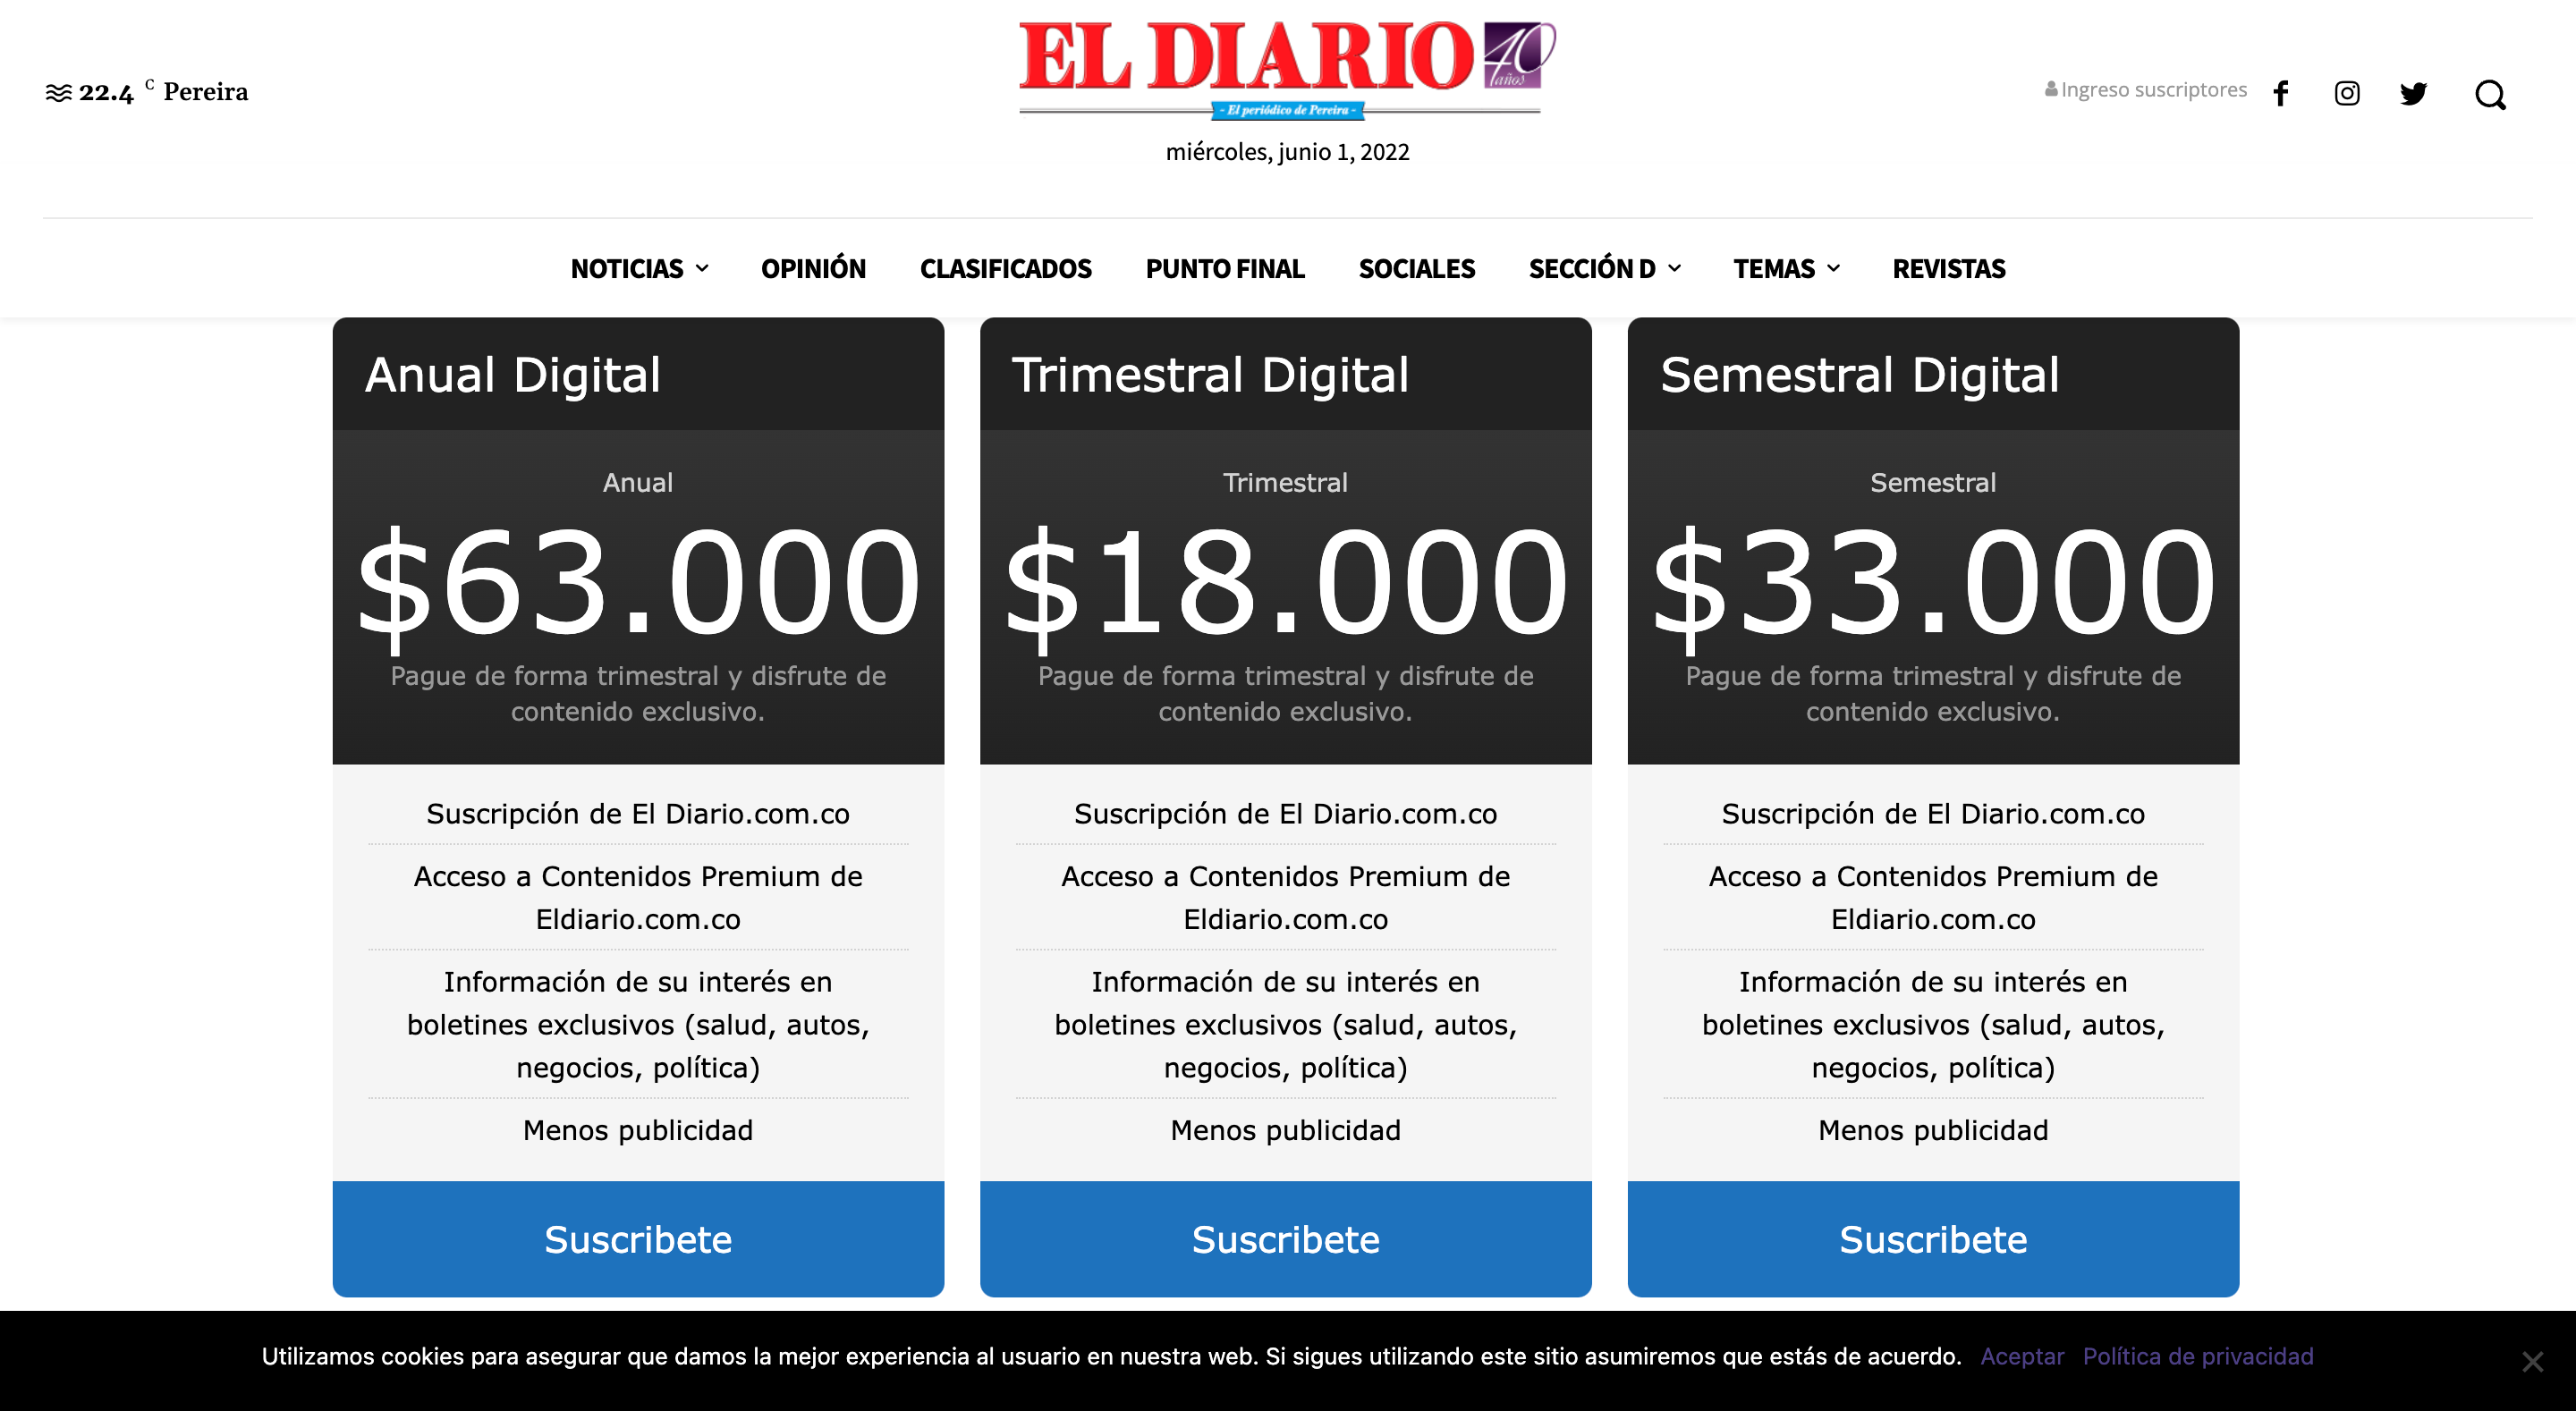 El Diario Membership Levels and Pricing